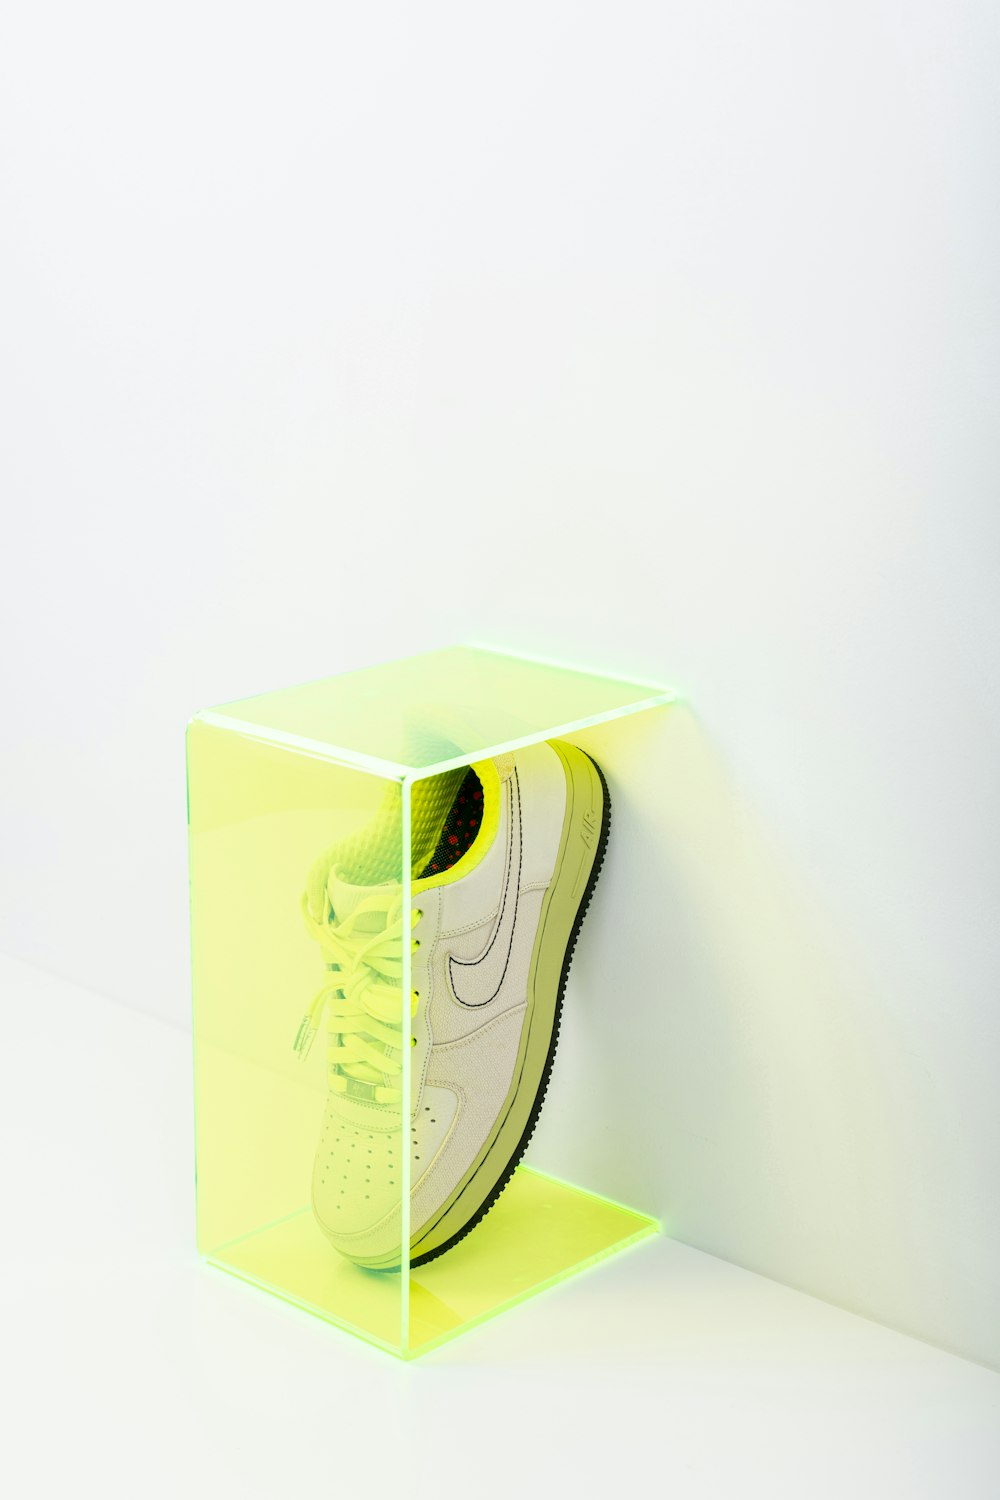 Zapatillas Nike verdes y blancas